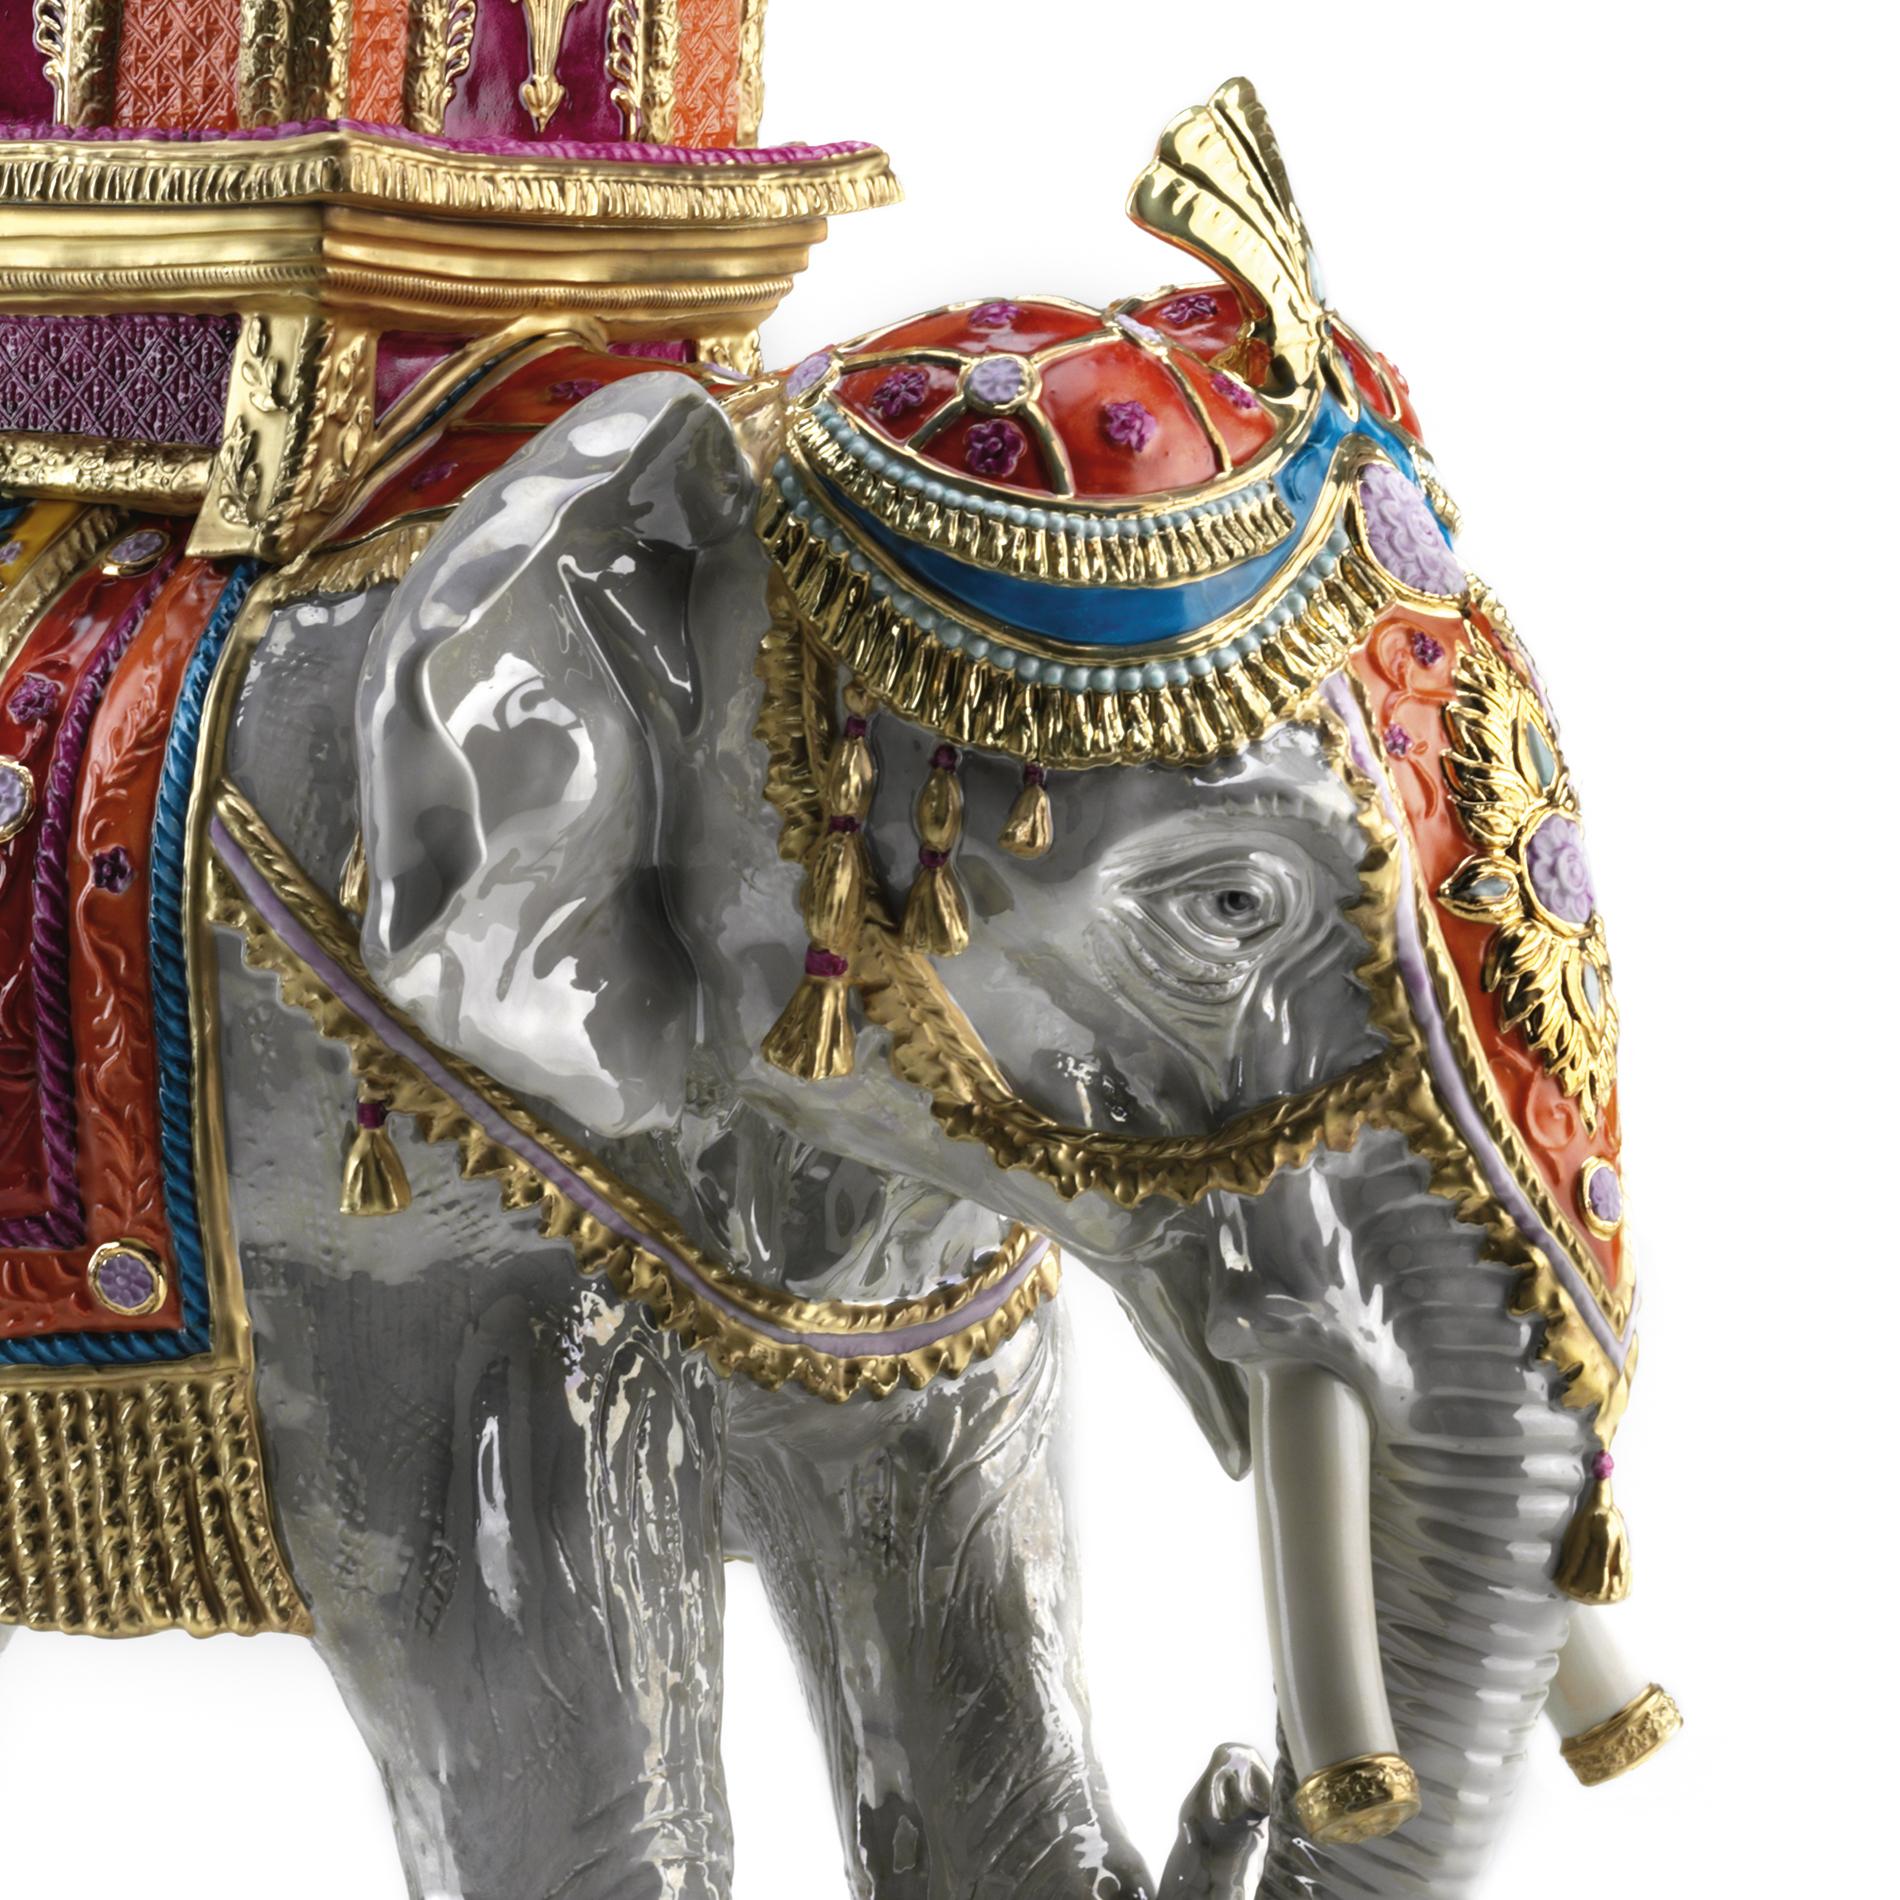 Skulptur Udaipur roter Elefant in Handarbeit
porzellan, handbemaltes Porzellan. Mit 24-karätigem Gold-
plattierte Details.